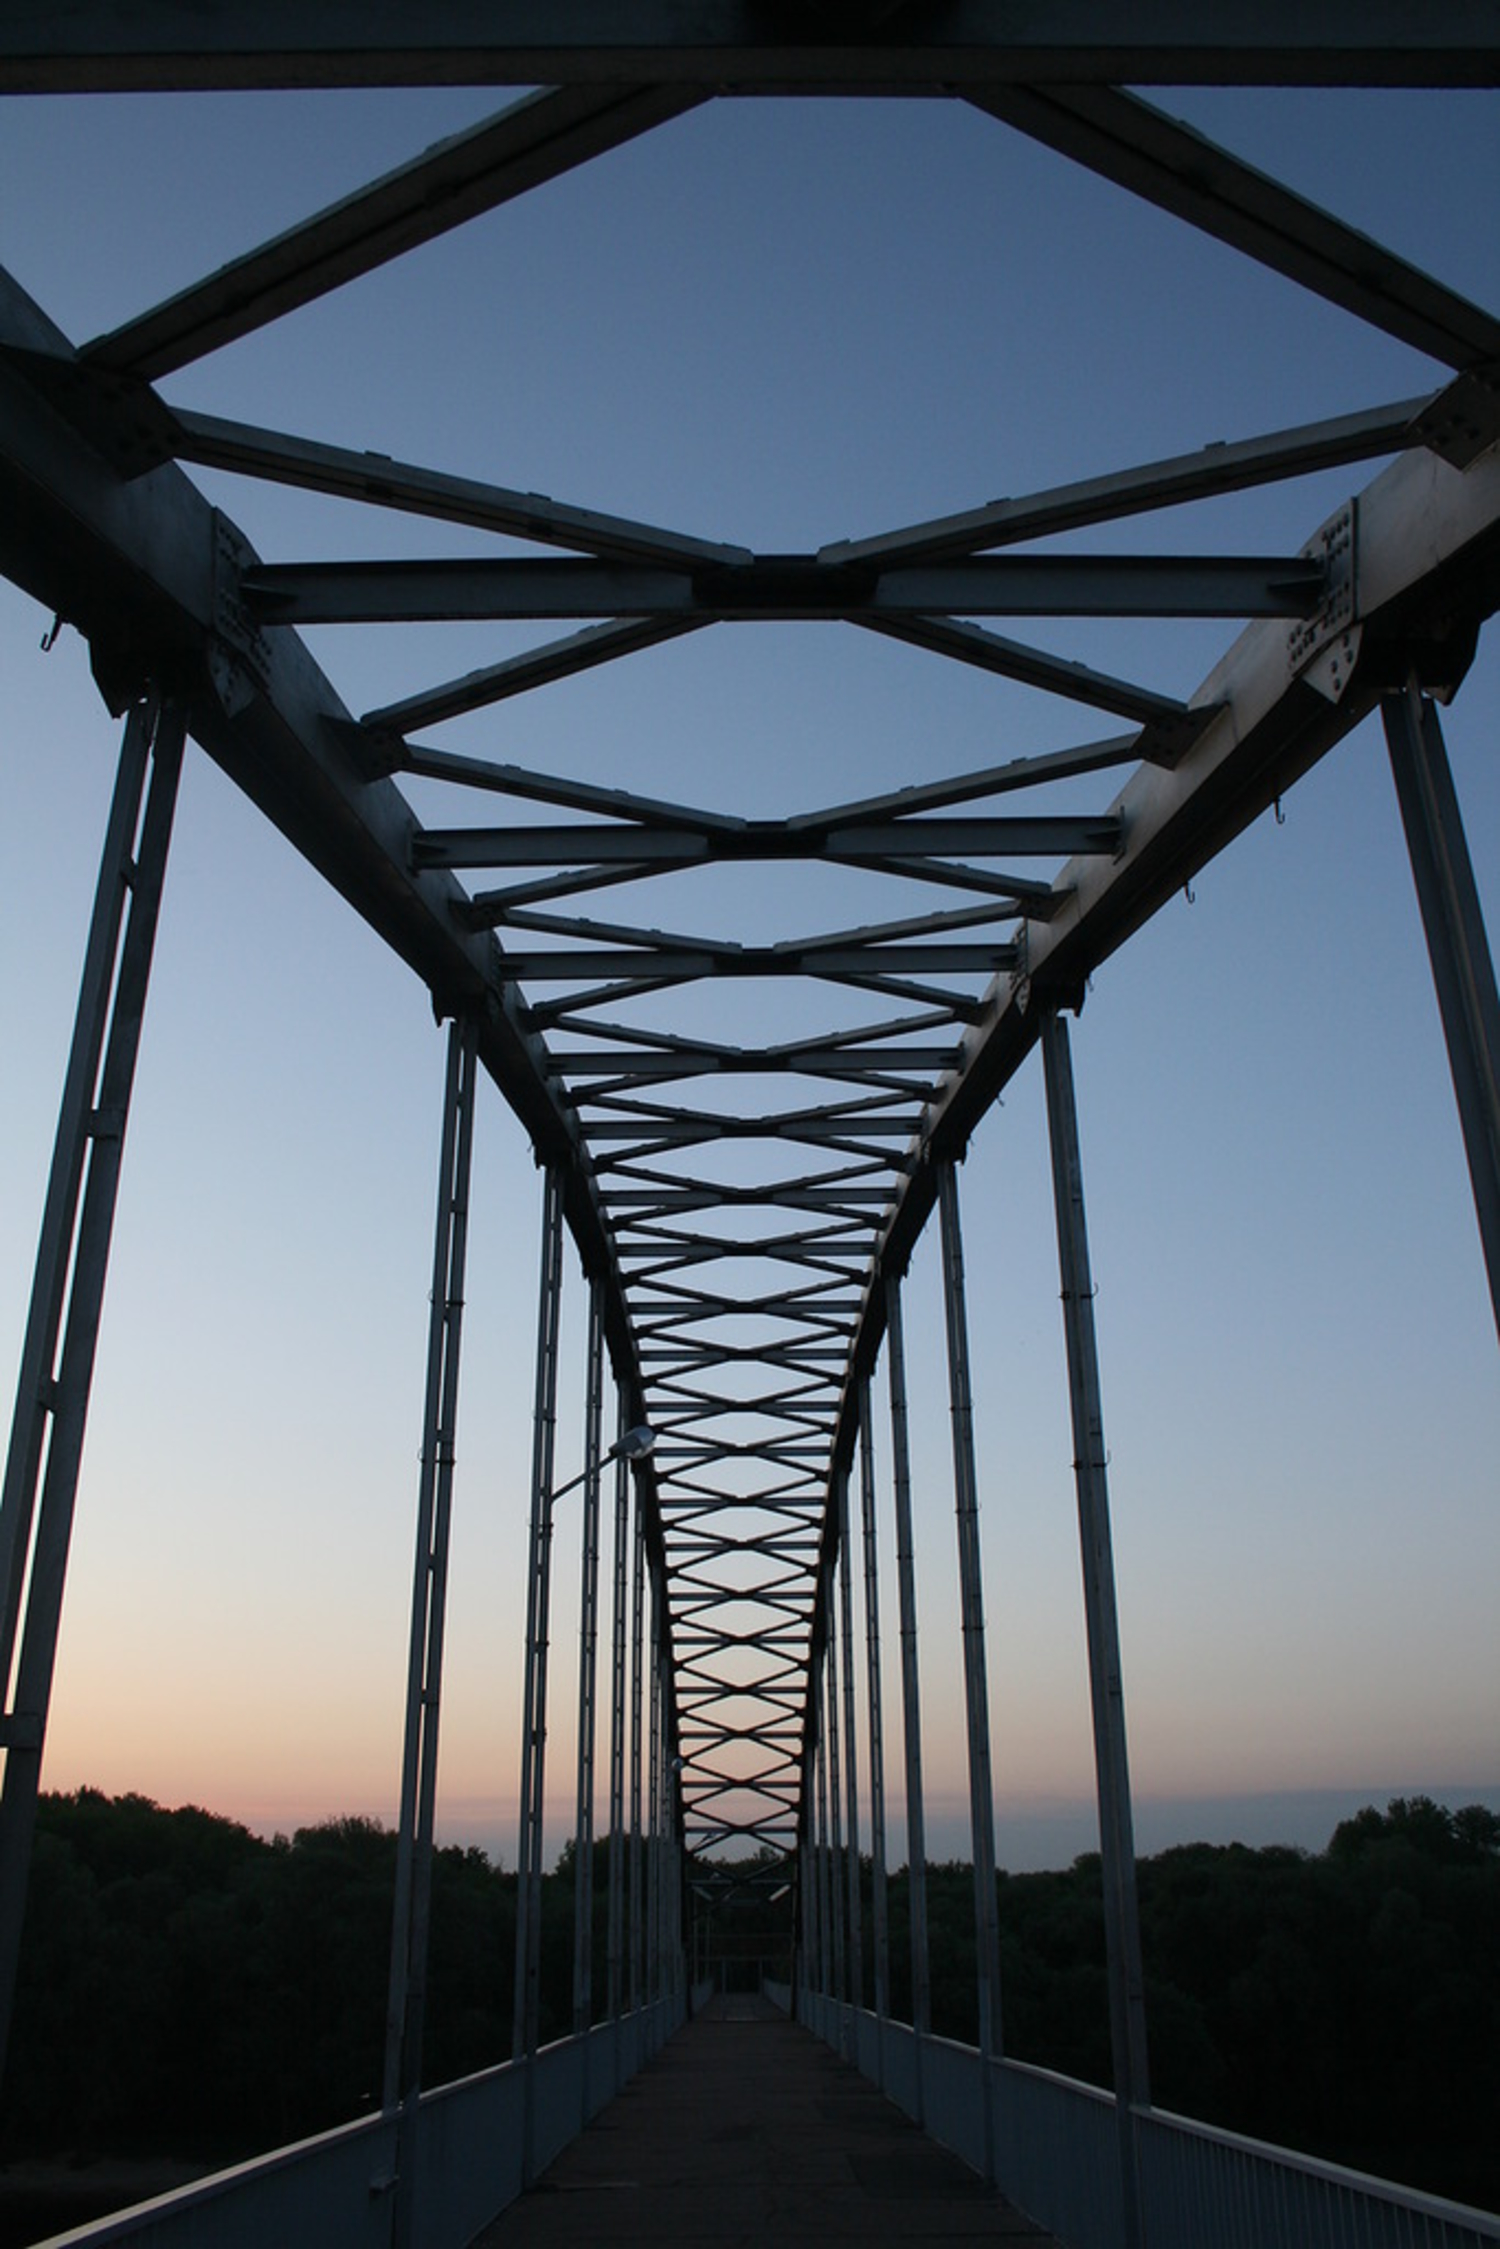 мост с утра